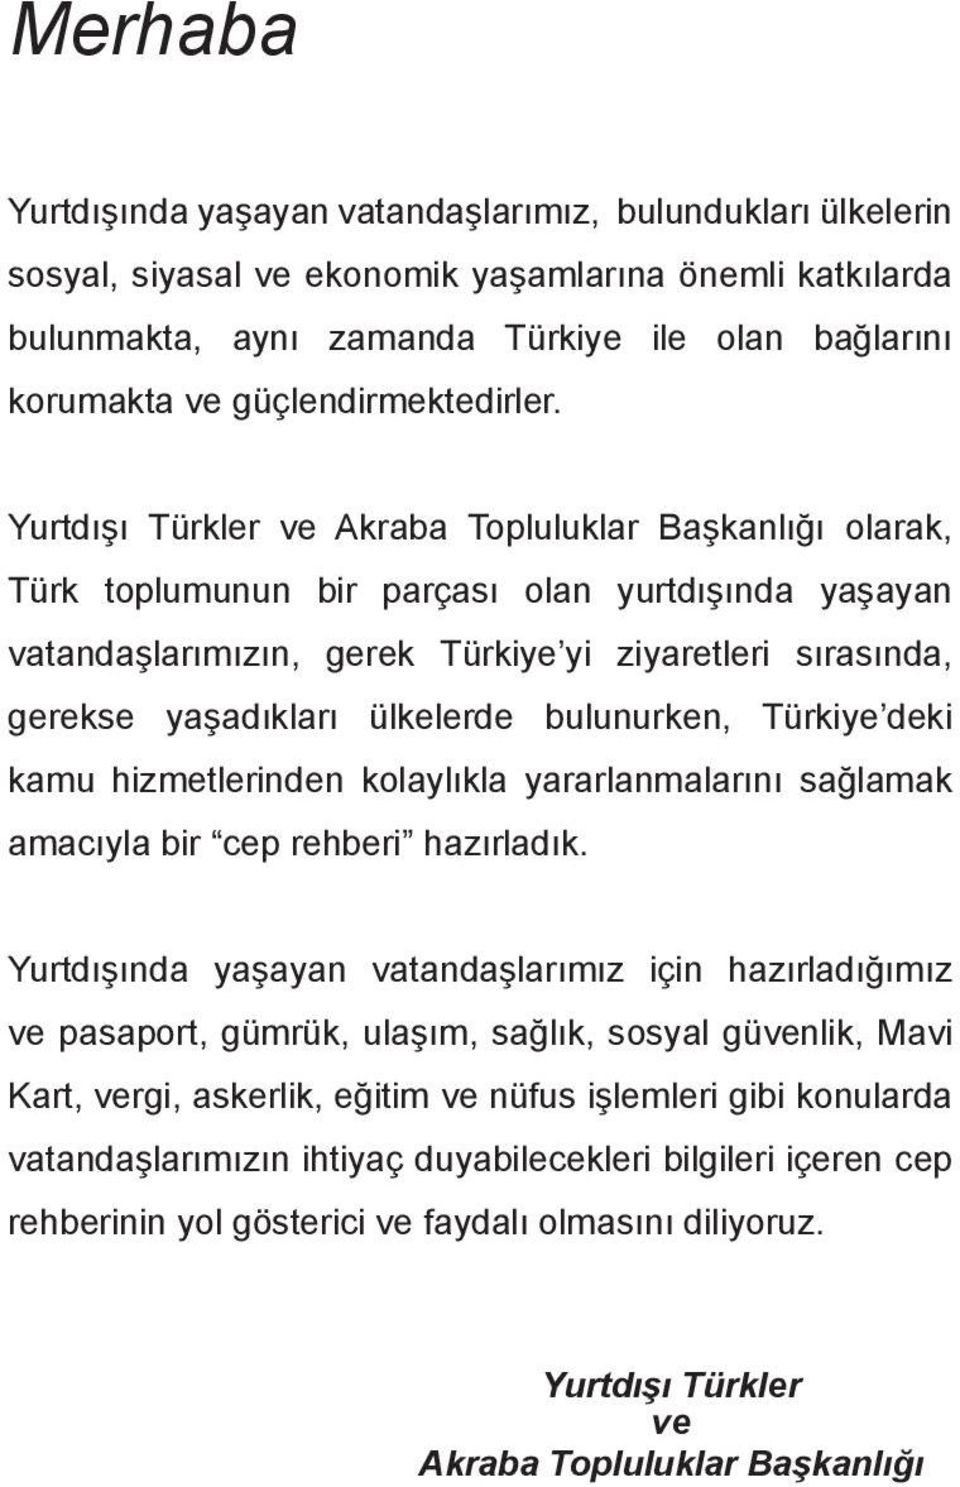 Yurtdışı Türkler ve Akraba Topluluklar Başkanlığı olarak, Türk toplumunun bir parçası olan yurtdışında yaşayan vatandaşlarımızın, gerek Türkiye yi ziyaretleri sırasında, gerekse yaşadıkları ülkelerde